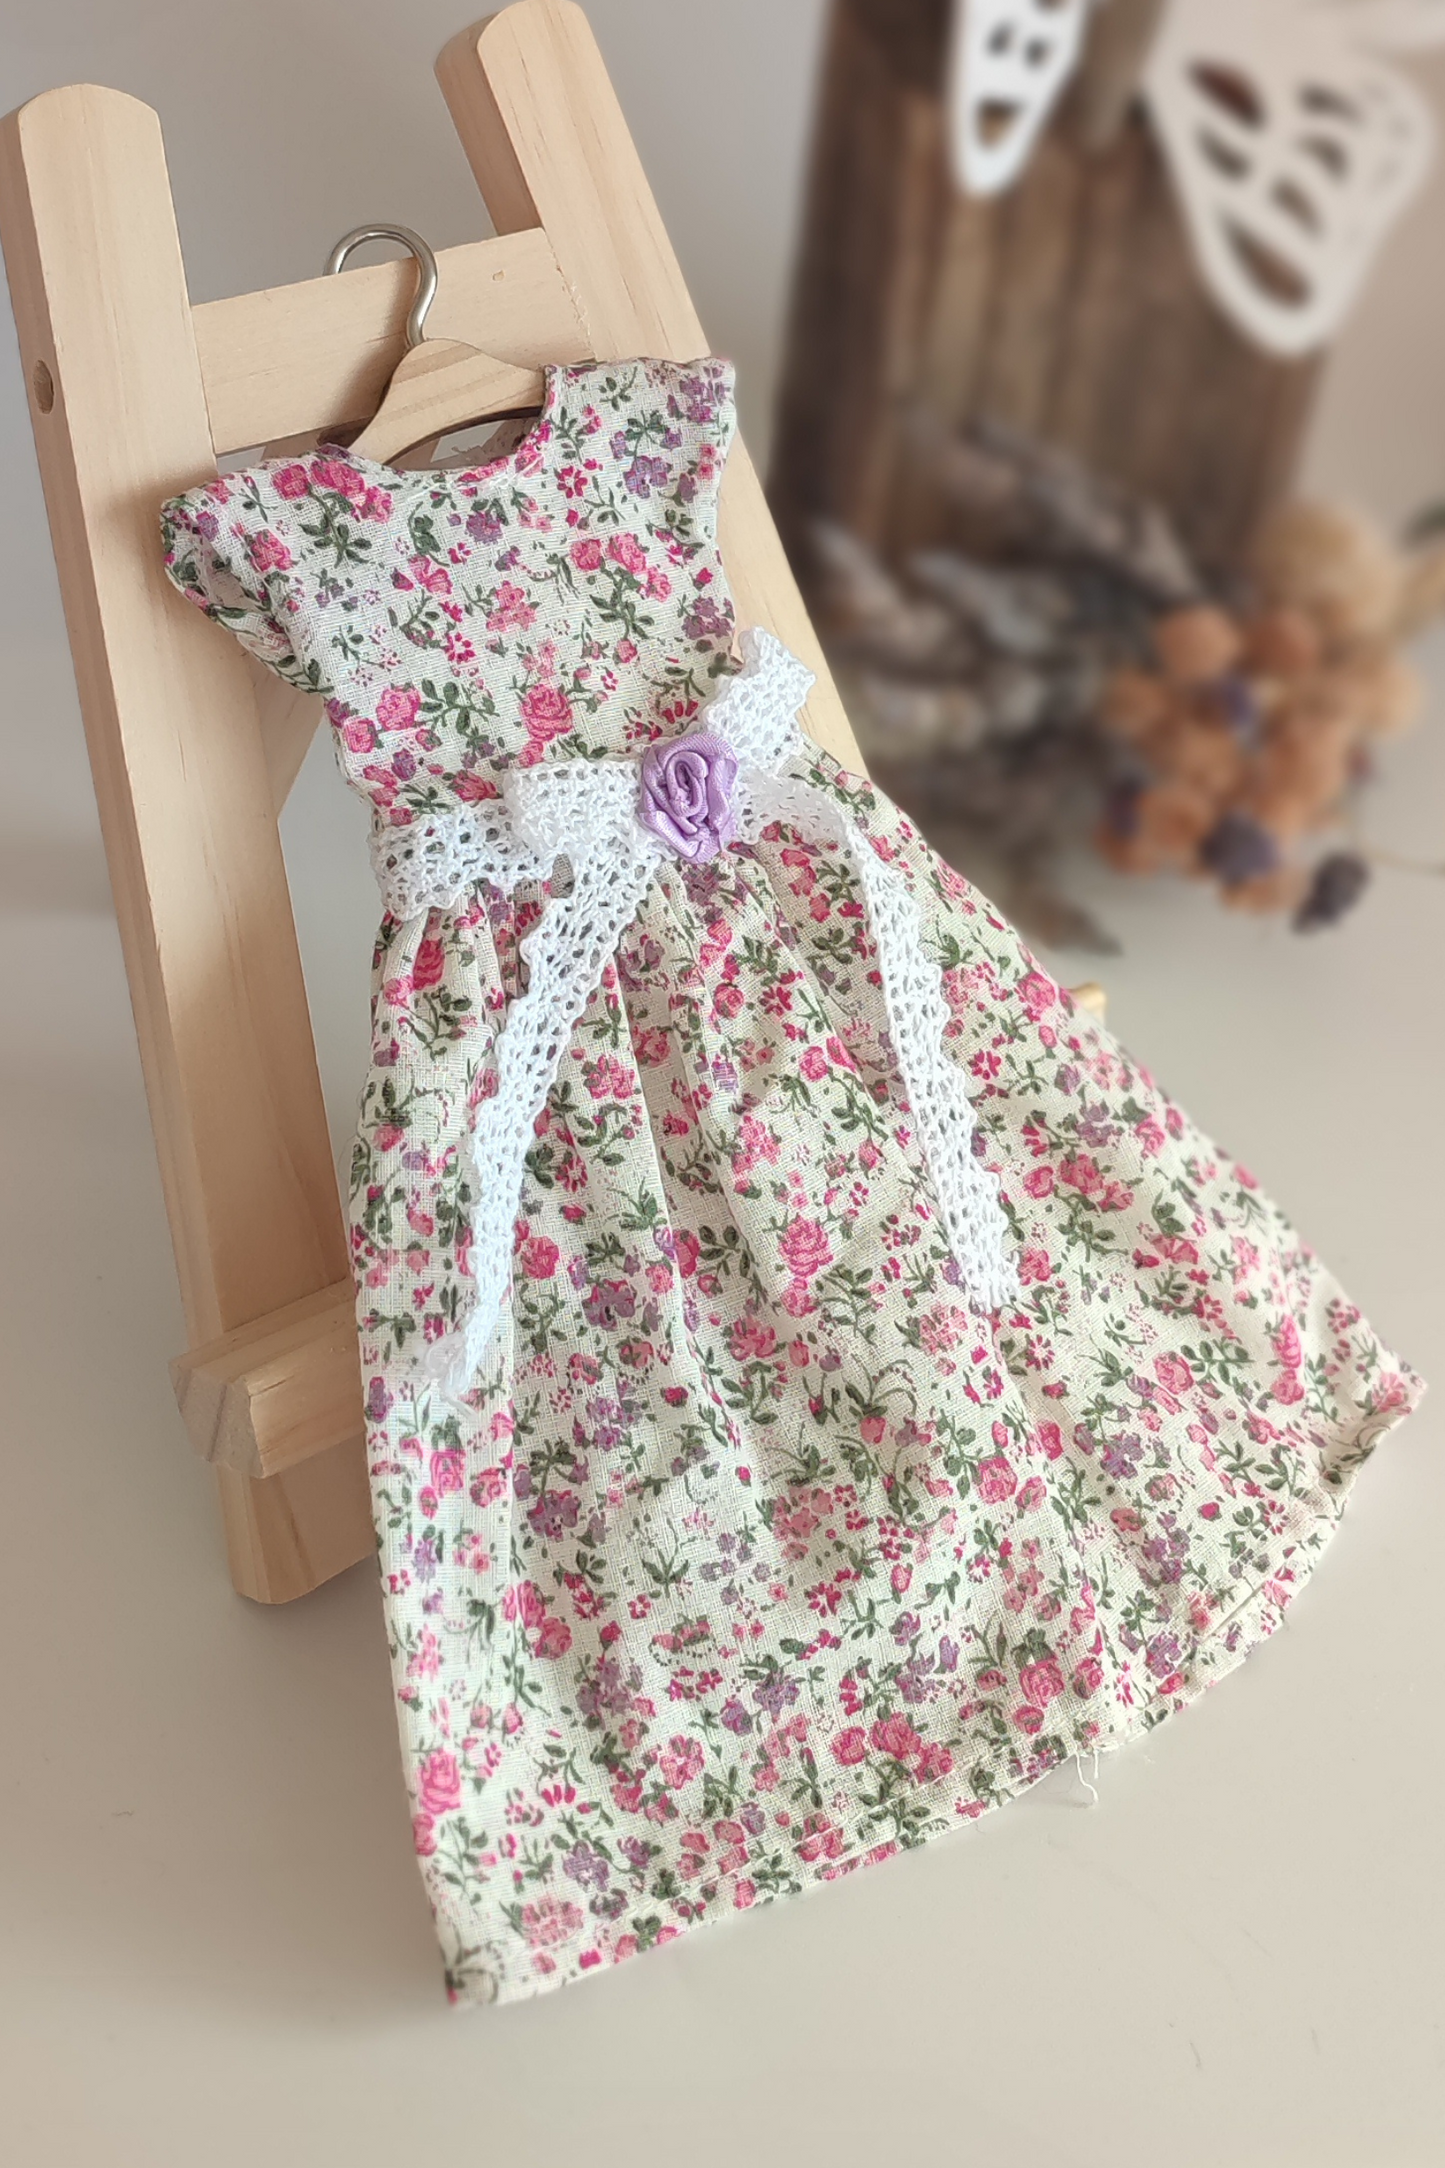 Doll dress with dark flowers